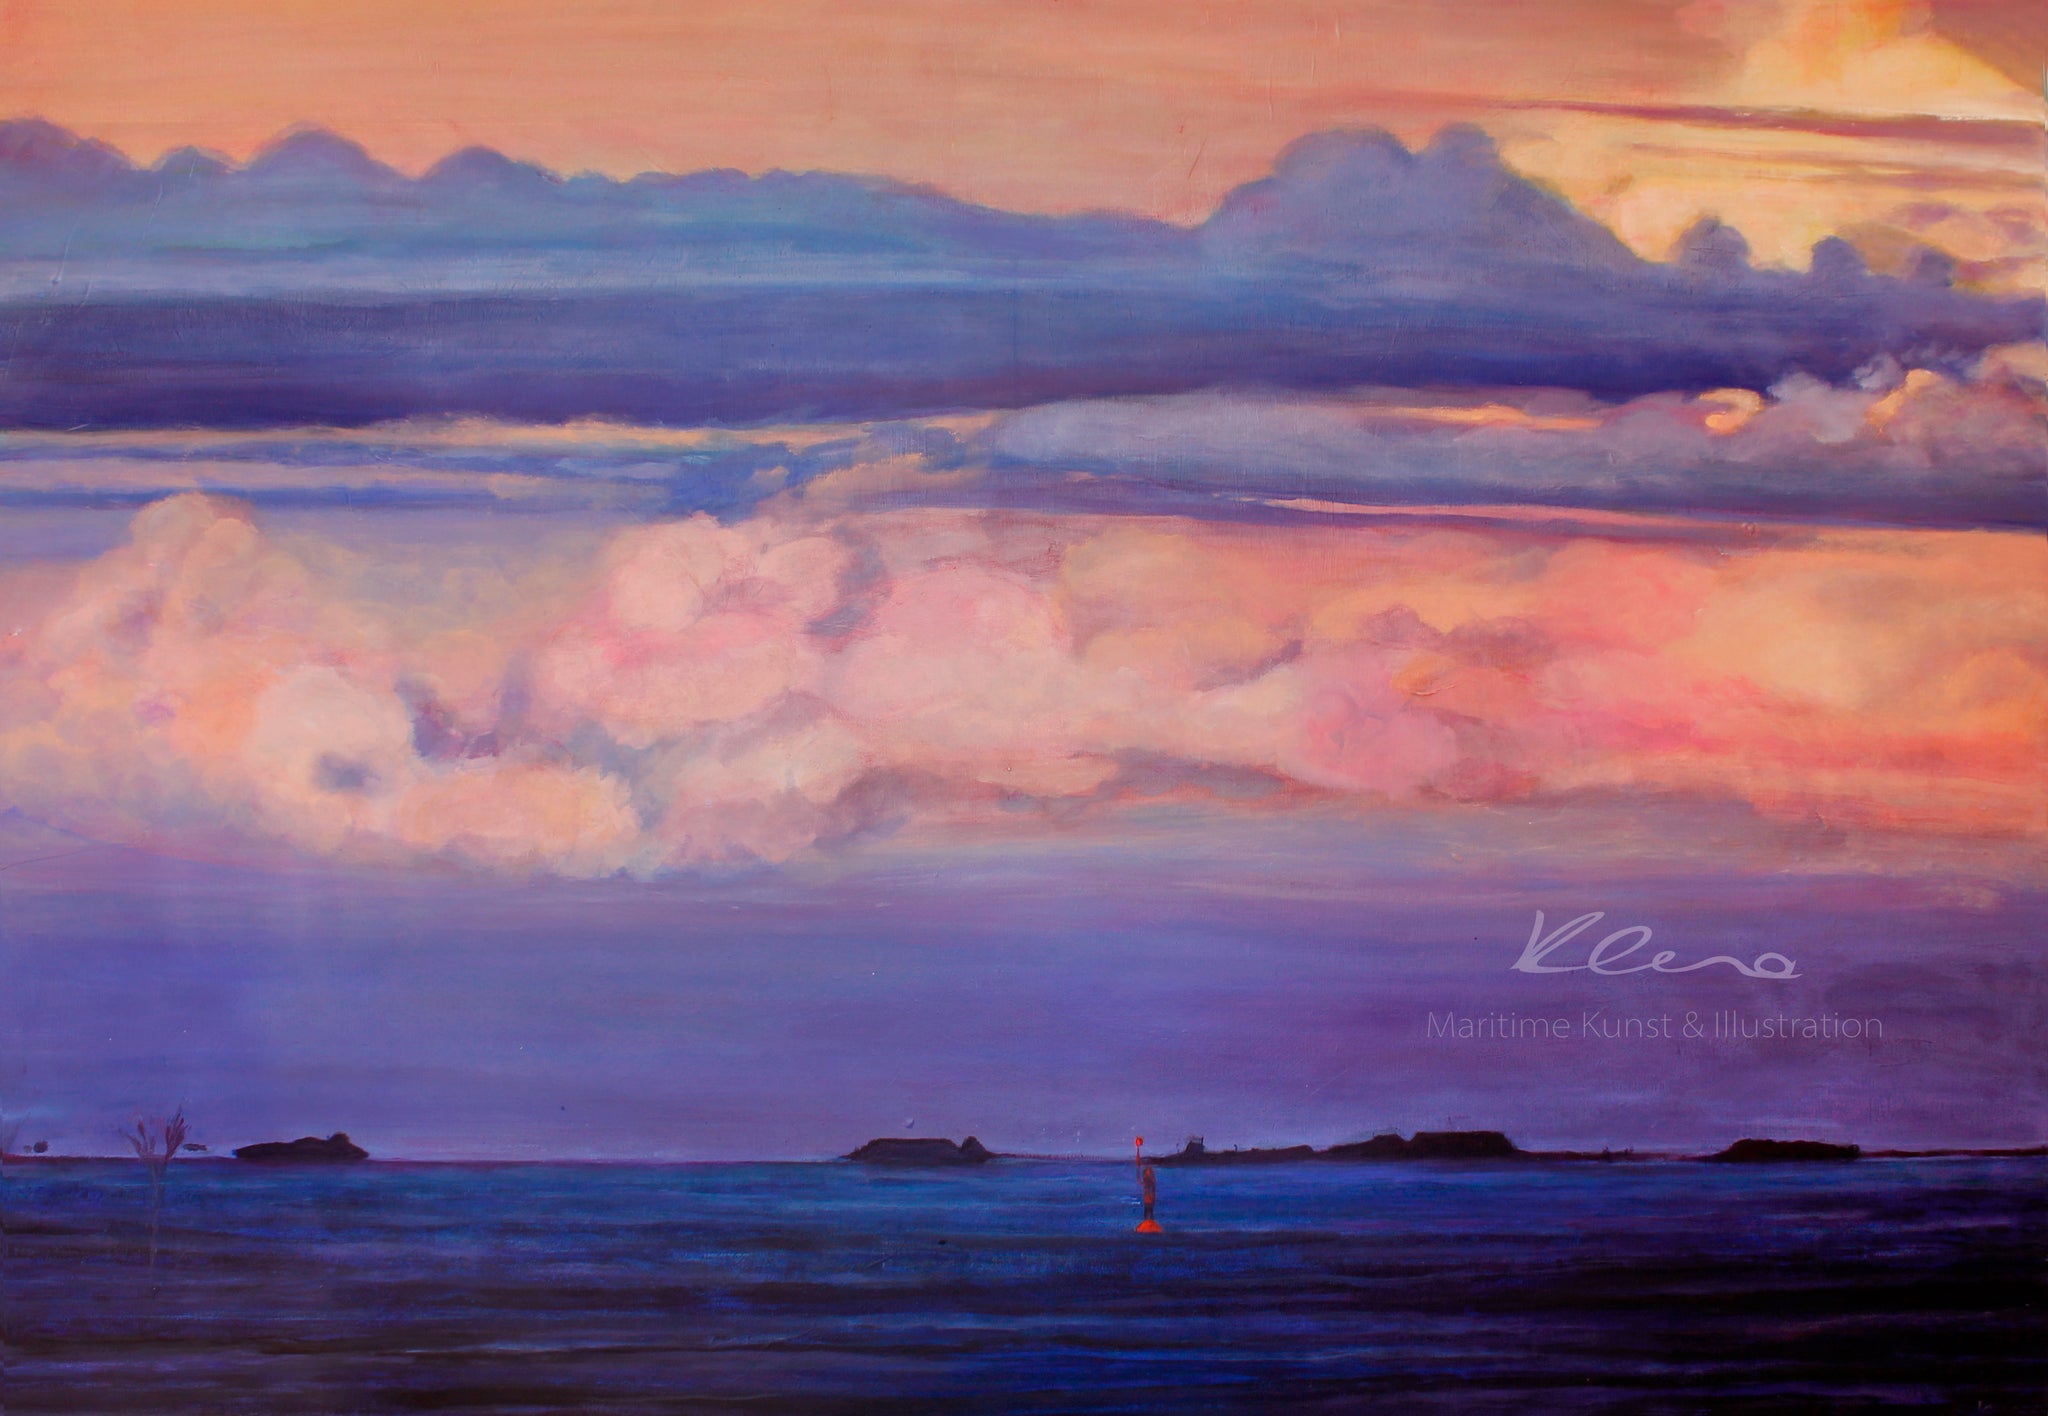 Das Gemälde zeigt in warmen Farben einen Sonnenuntergang der Nordsee. Sonnenuntergang Nordsee Kunstdruck von Susanne Klena.